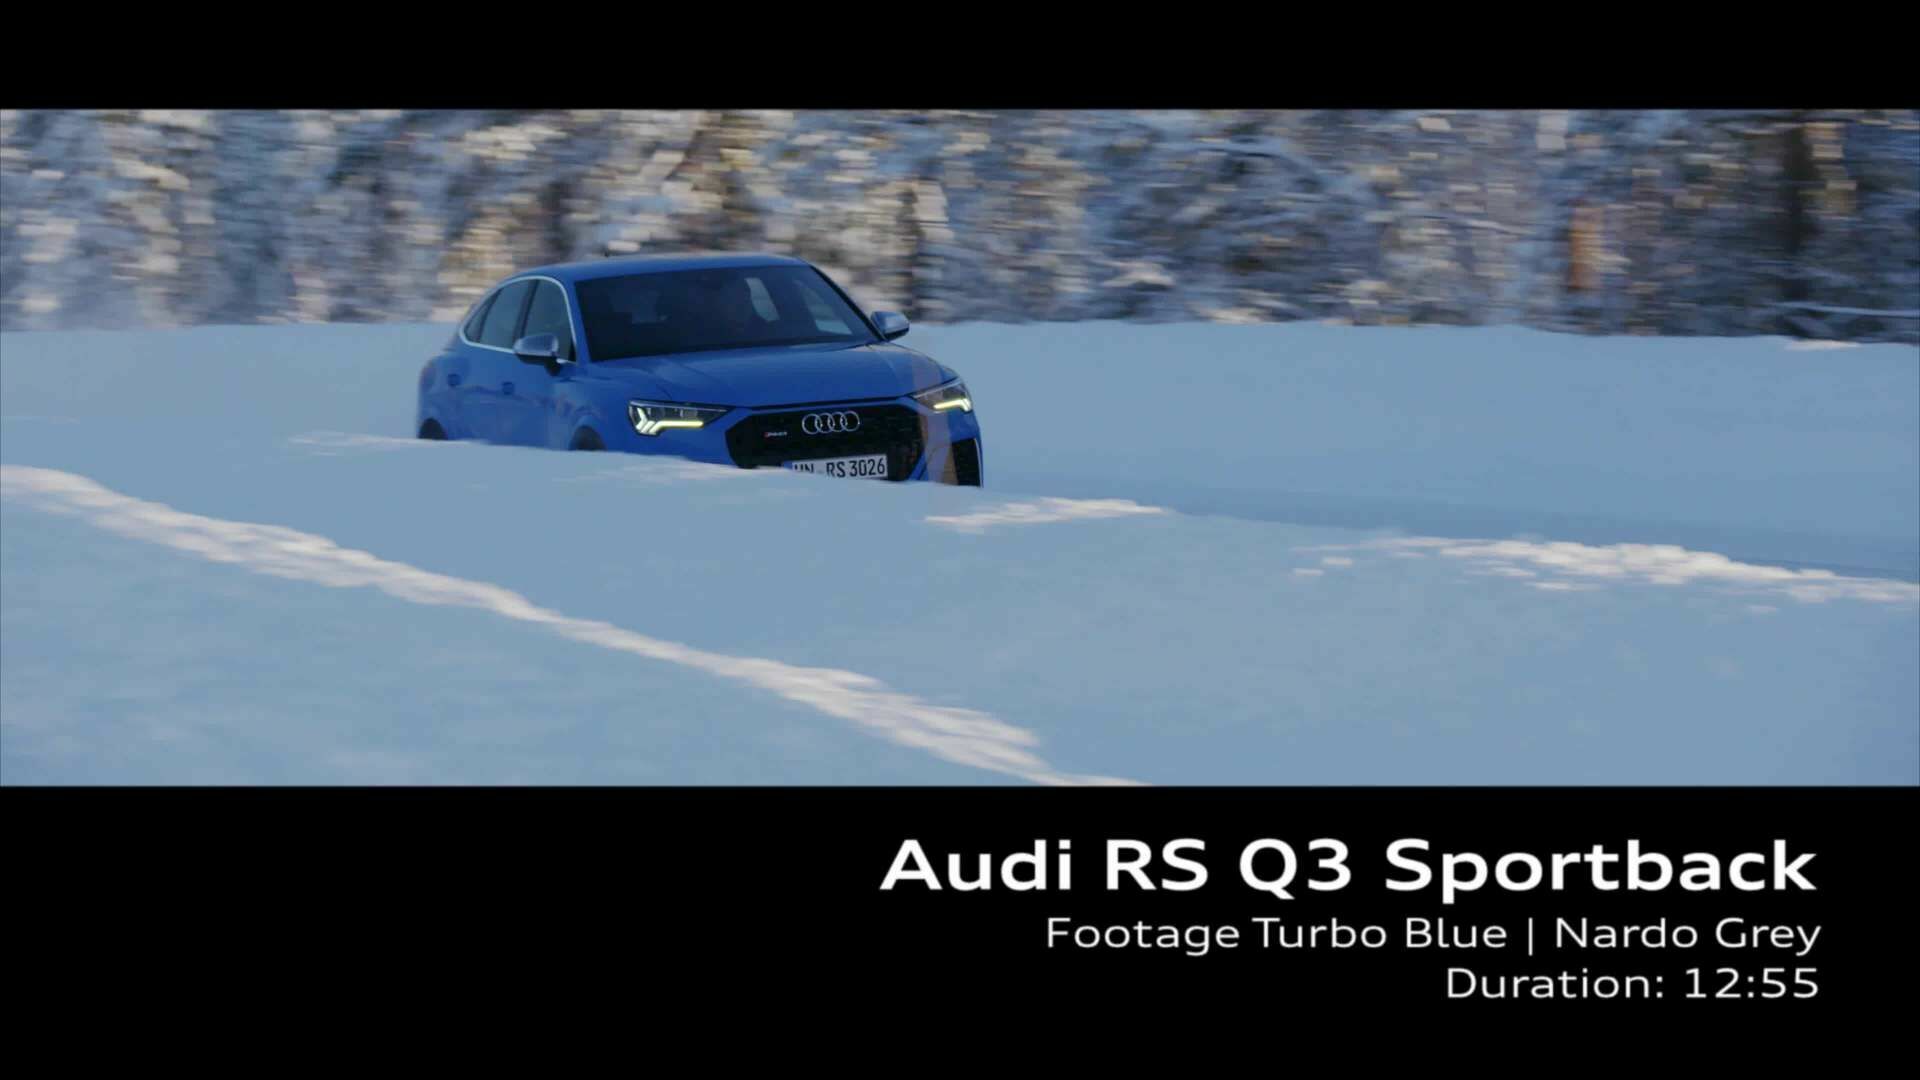 Audi RS Q3 Sportback Footage on location